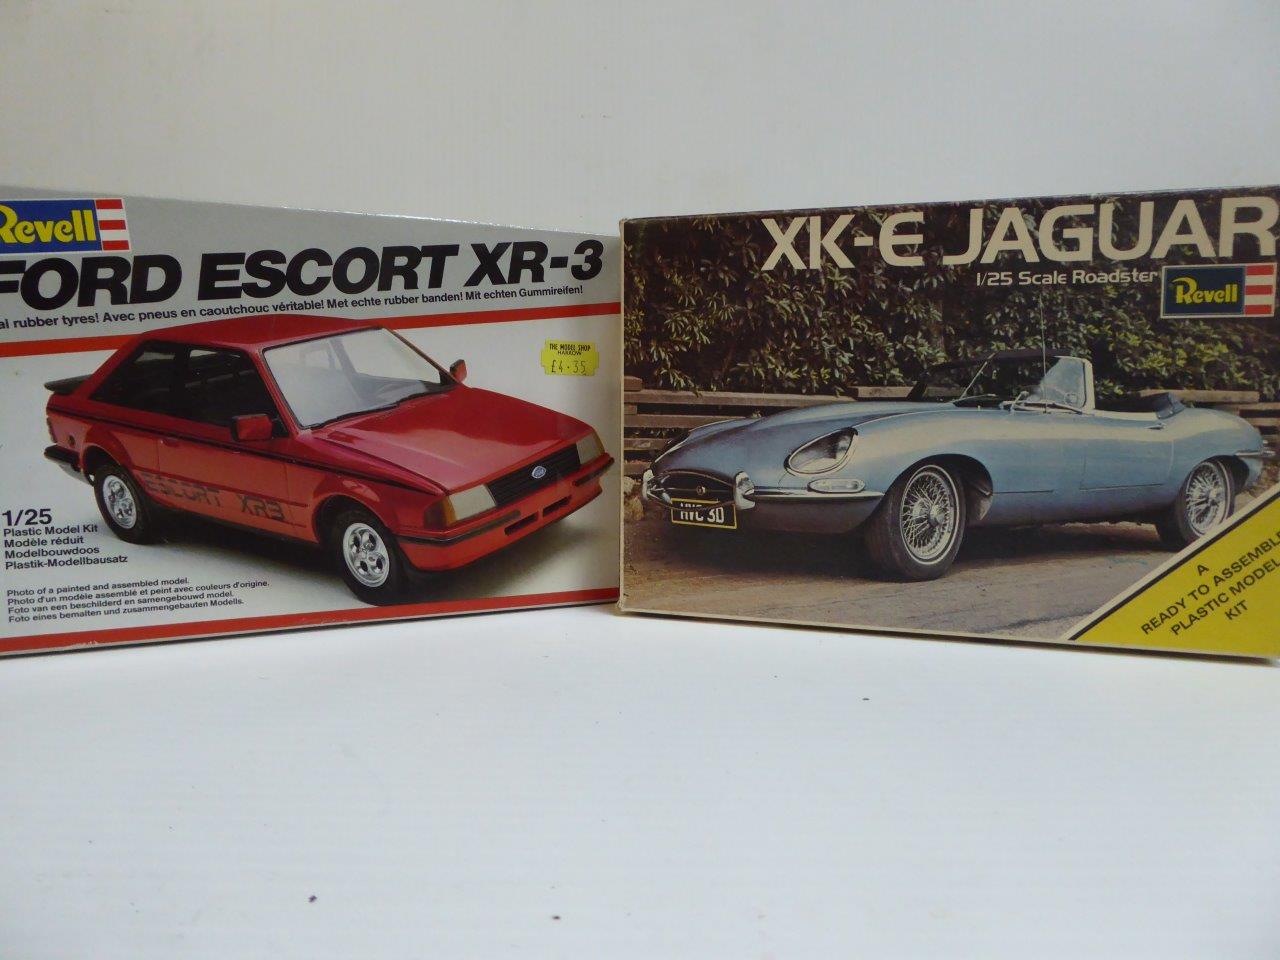 XK-E Jaguar Roadster and a Ford Escort XR-3